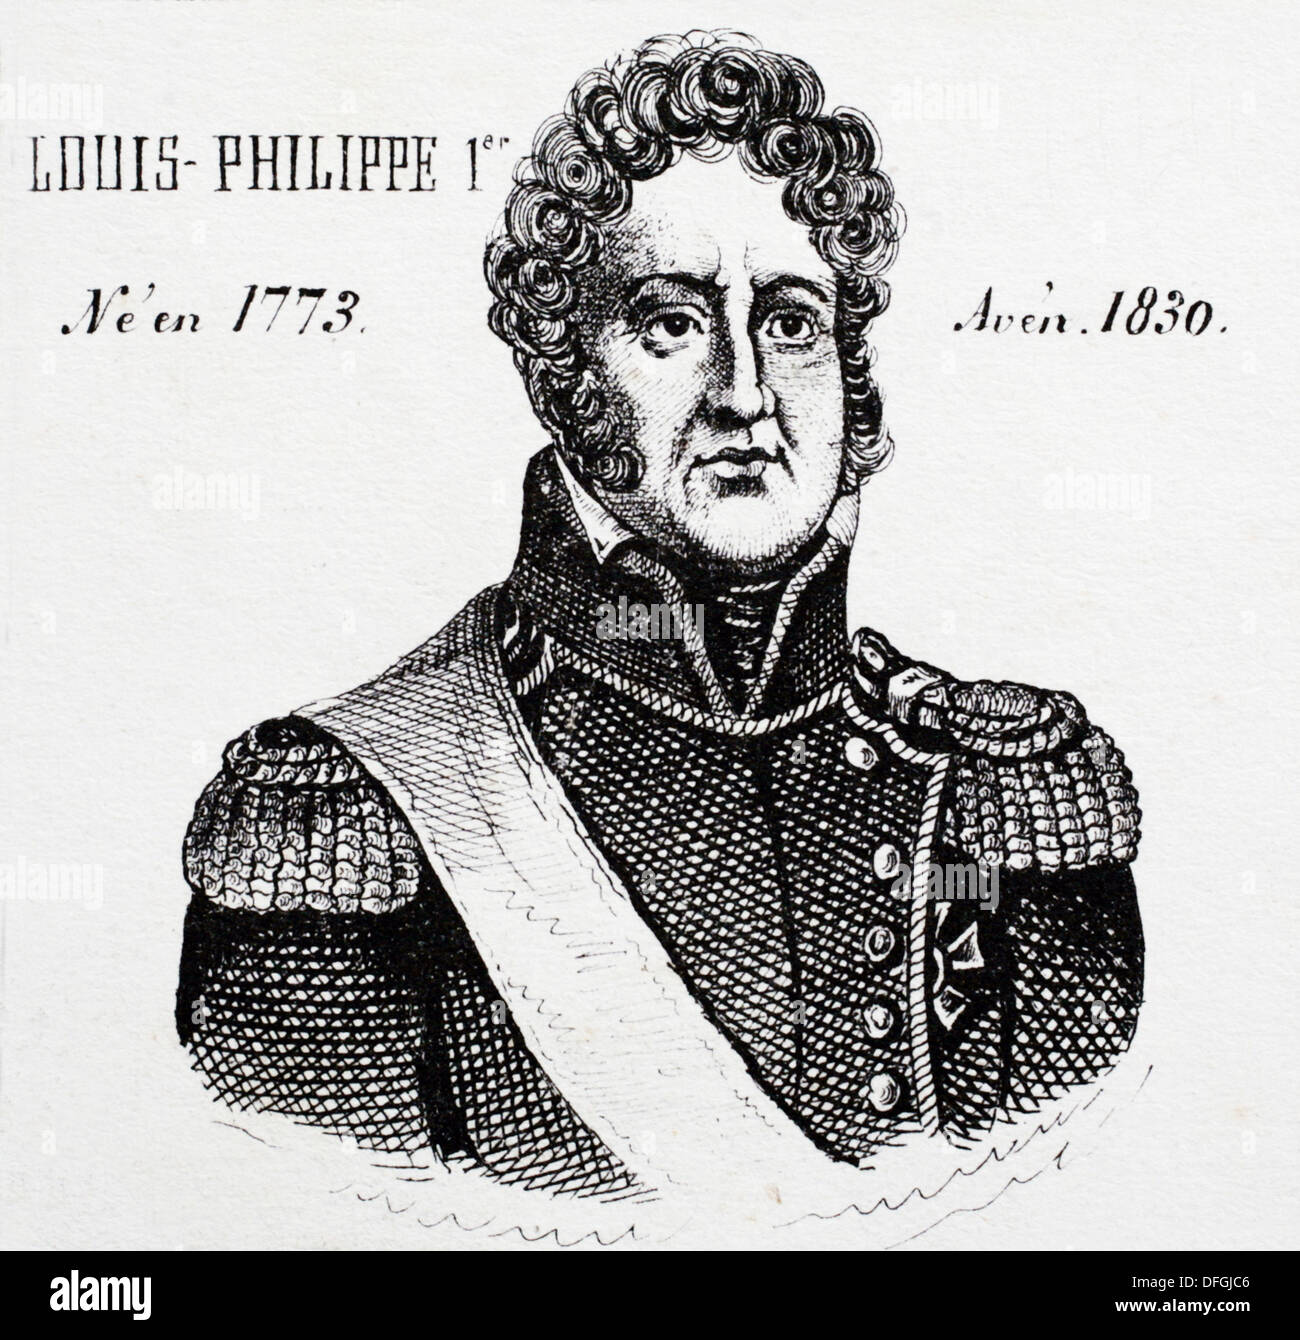 Luis Felipe I, rey de Francia desde 1830 hasta 1848. Historia de Francia, por J.Henry (París, 1842) Foto de stock